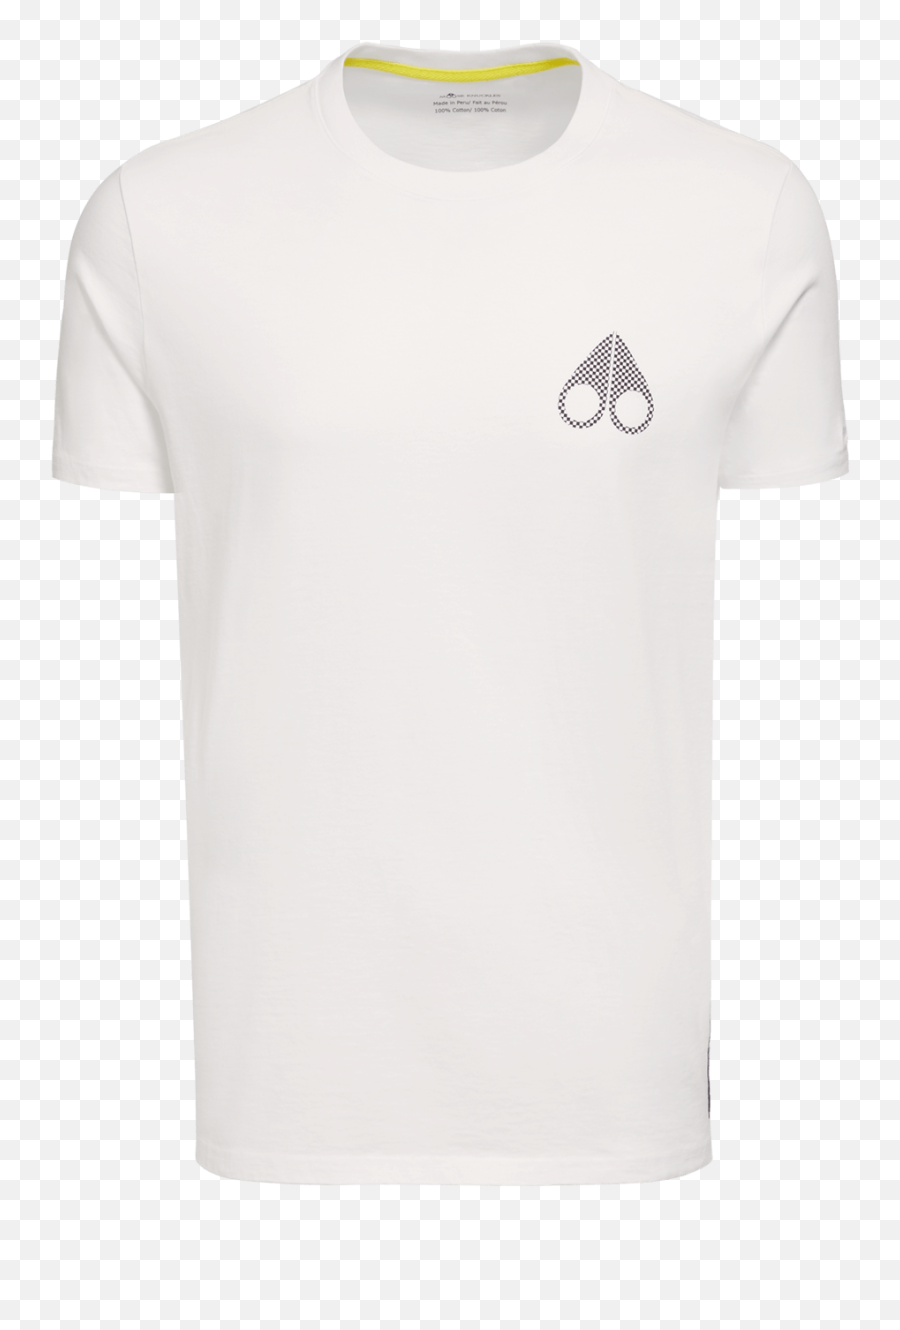 Shop Menu0027s T - Shirts Moose Knuckles Short Sleeve Emoji,Descendents Logo